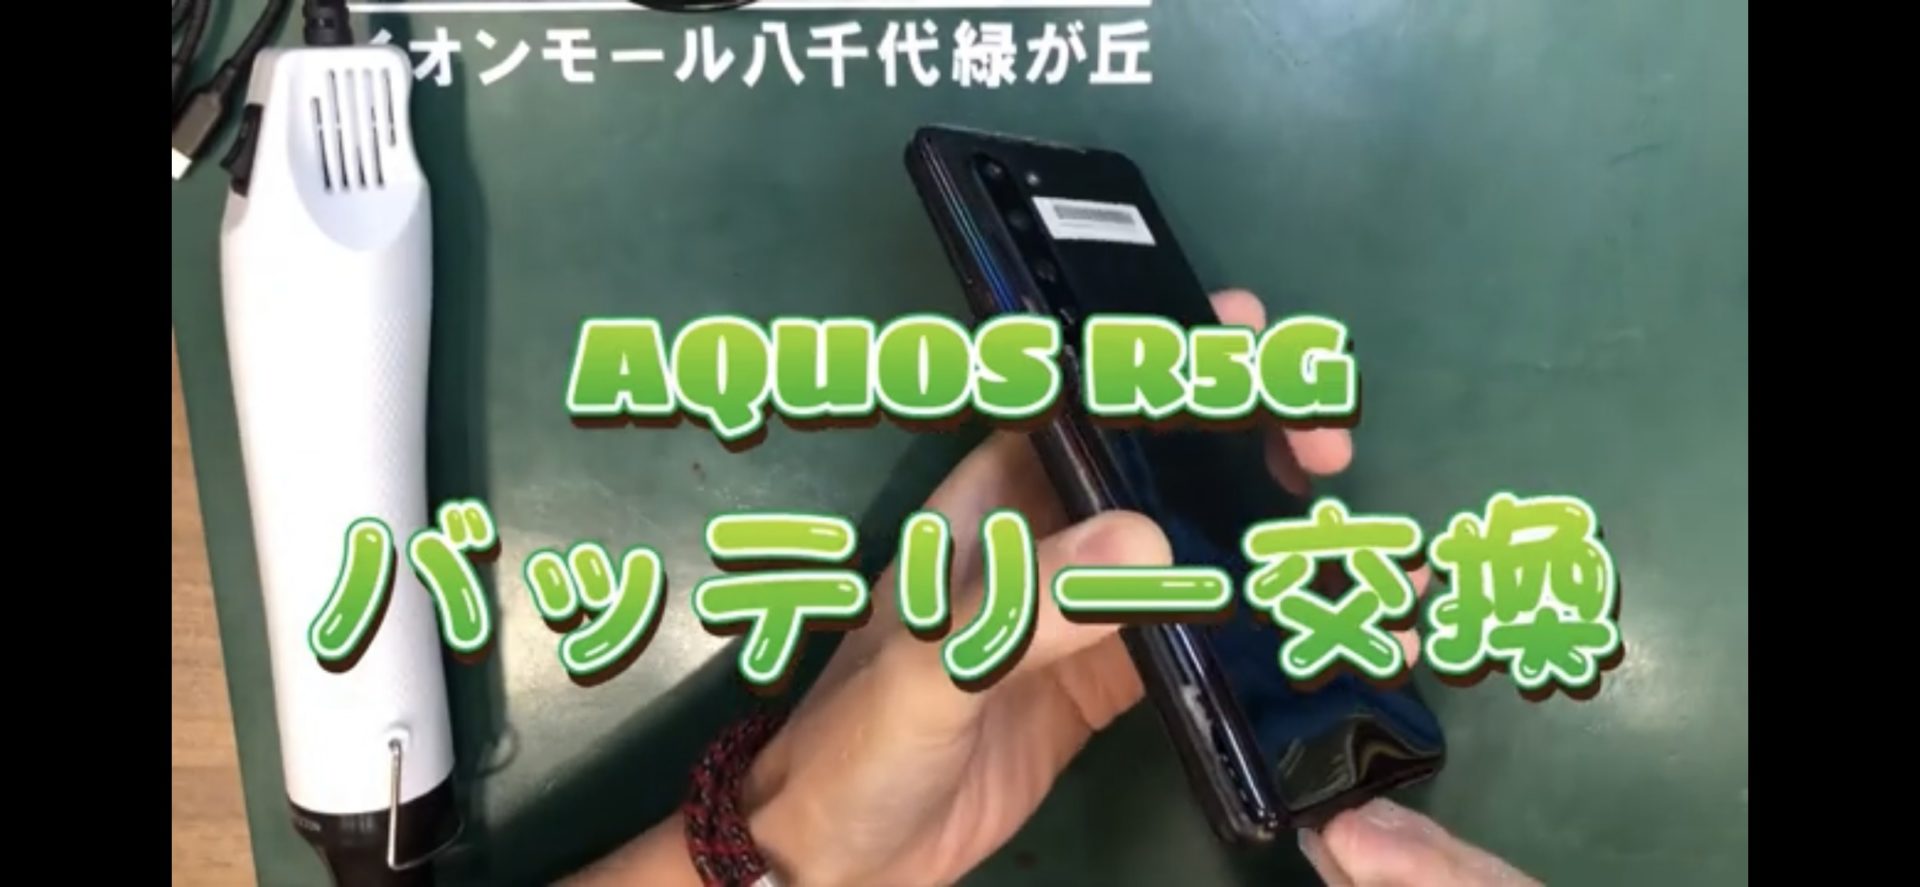 千葉でiPhone修理のEyeSmartのAQUOS R5Gバッテリー交換画像